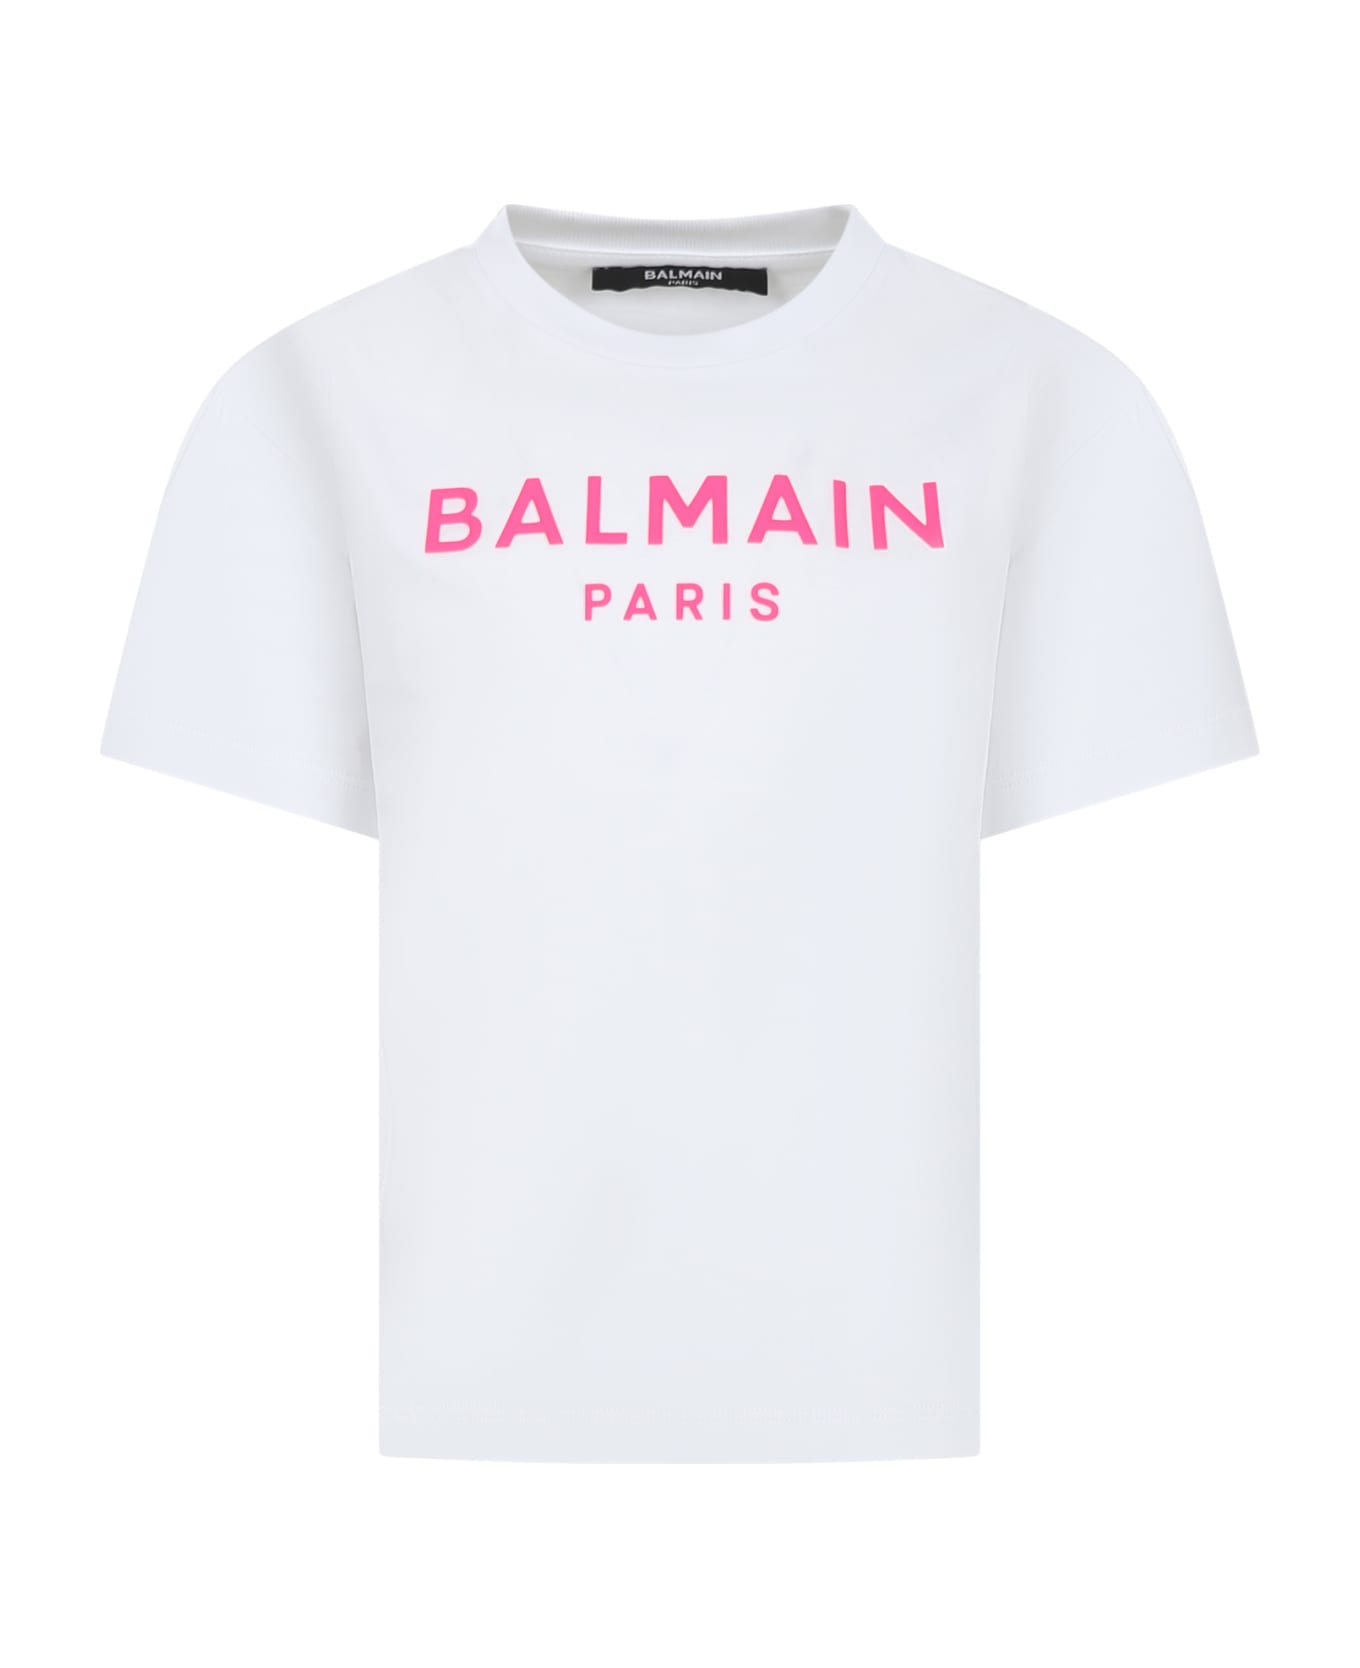 Balmain White T-shirt For Girl With Logo - White/fuchsia